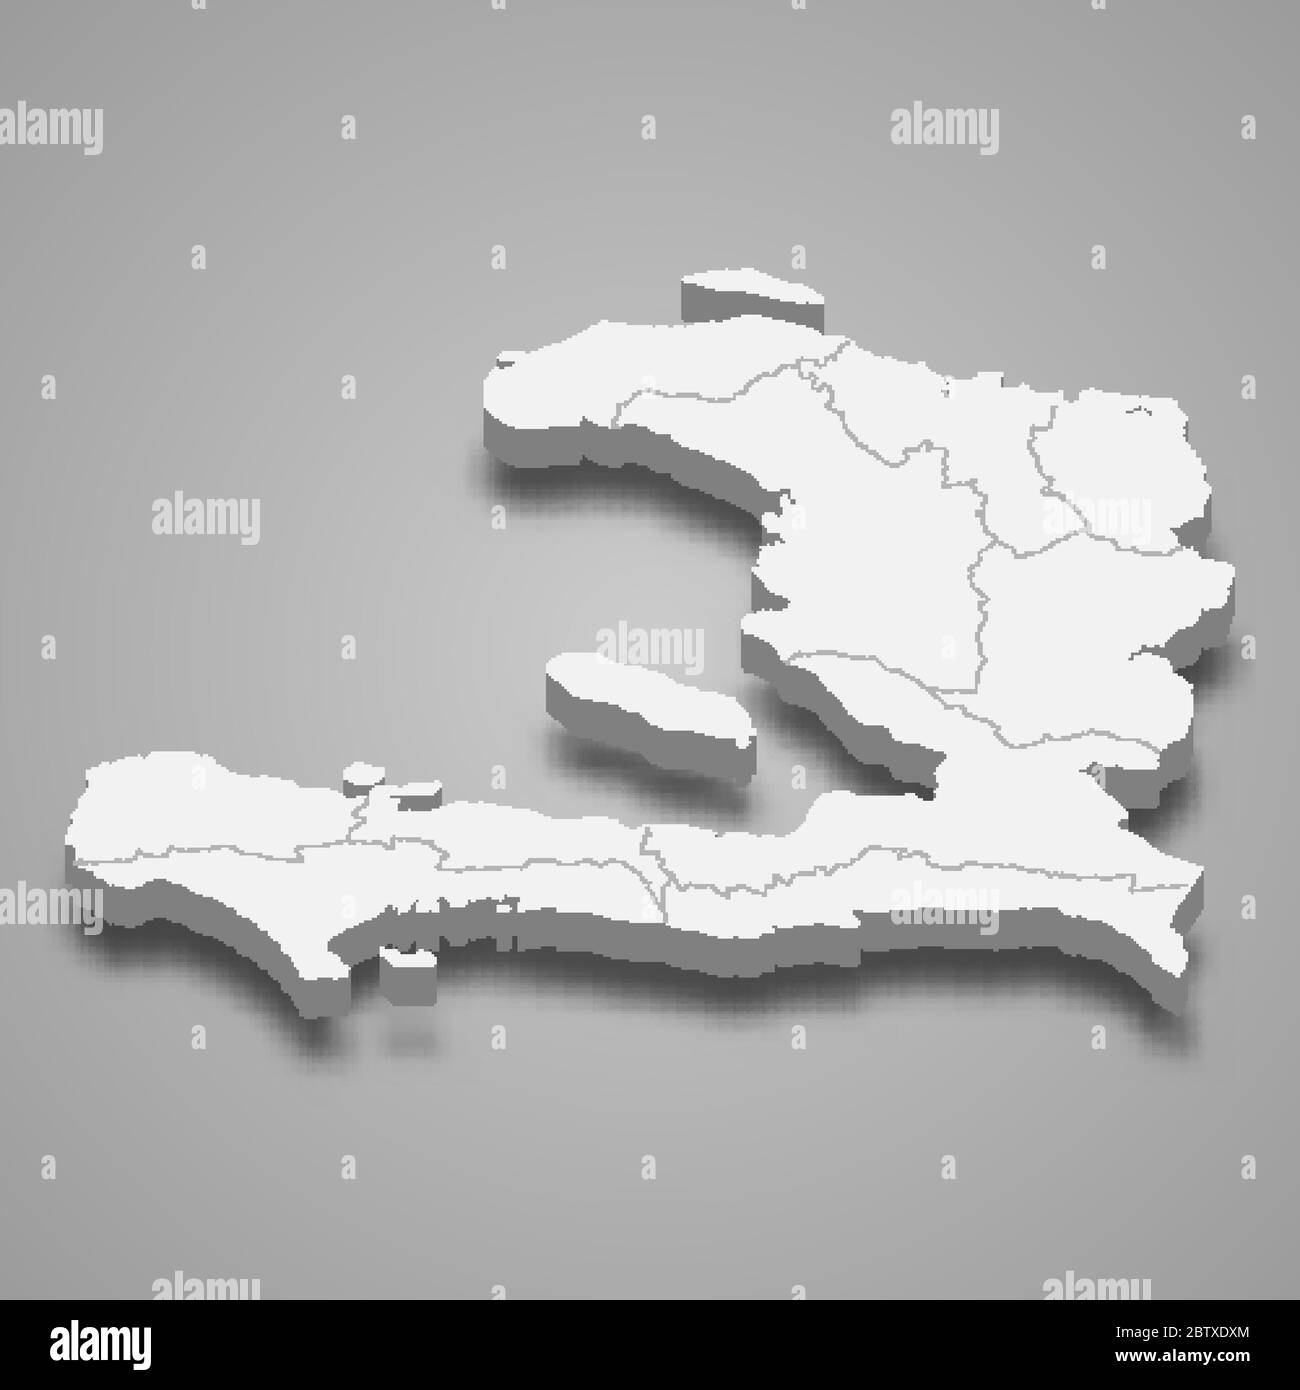 Carte 3d d'Haïti avec frontières des régions Illustration de Vecteur